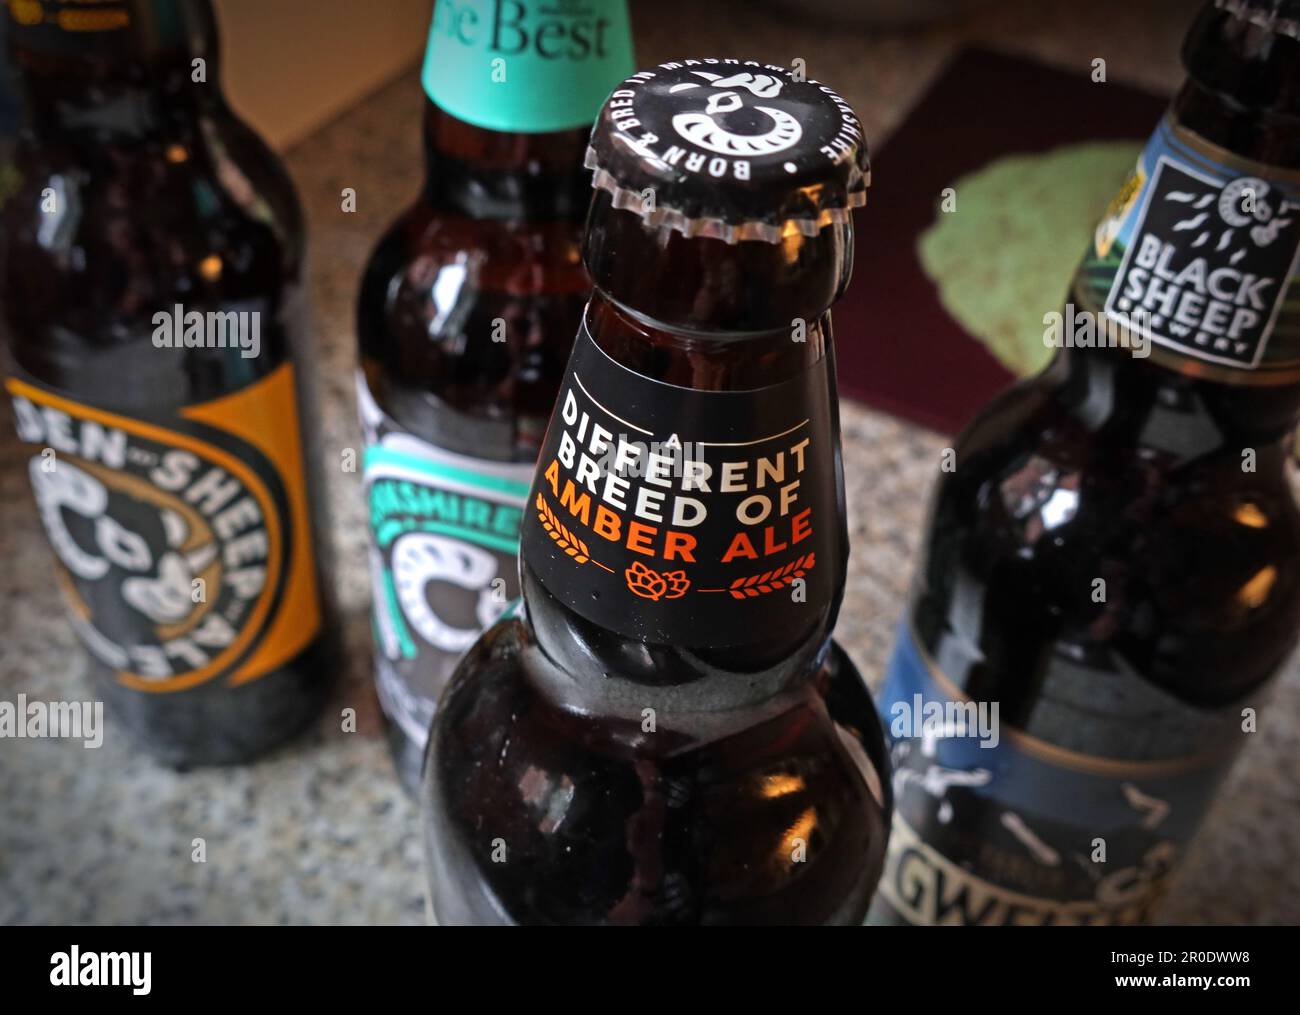 Abgefüllte Biere aus der Black Sheep Brewery, Wellgarth House, Wellgarth Court, Crosshills, Masham, Ripon, Yorkshire, England, HG4 4EN Stockfoto